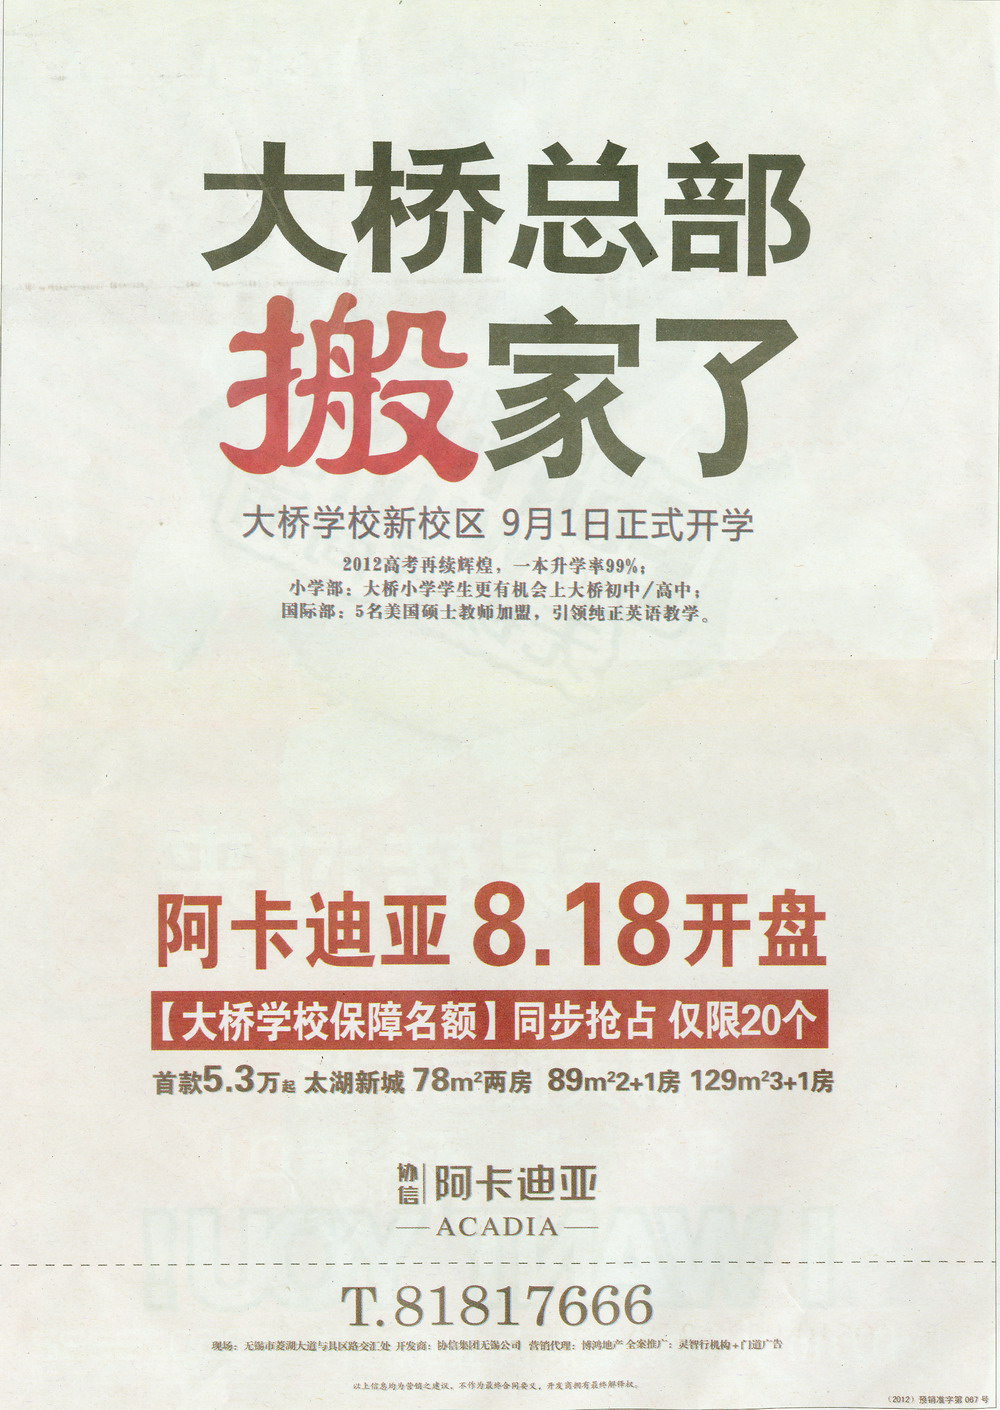 报纸广告 2012-08-16 江南晚报 B12   